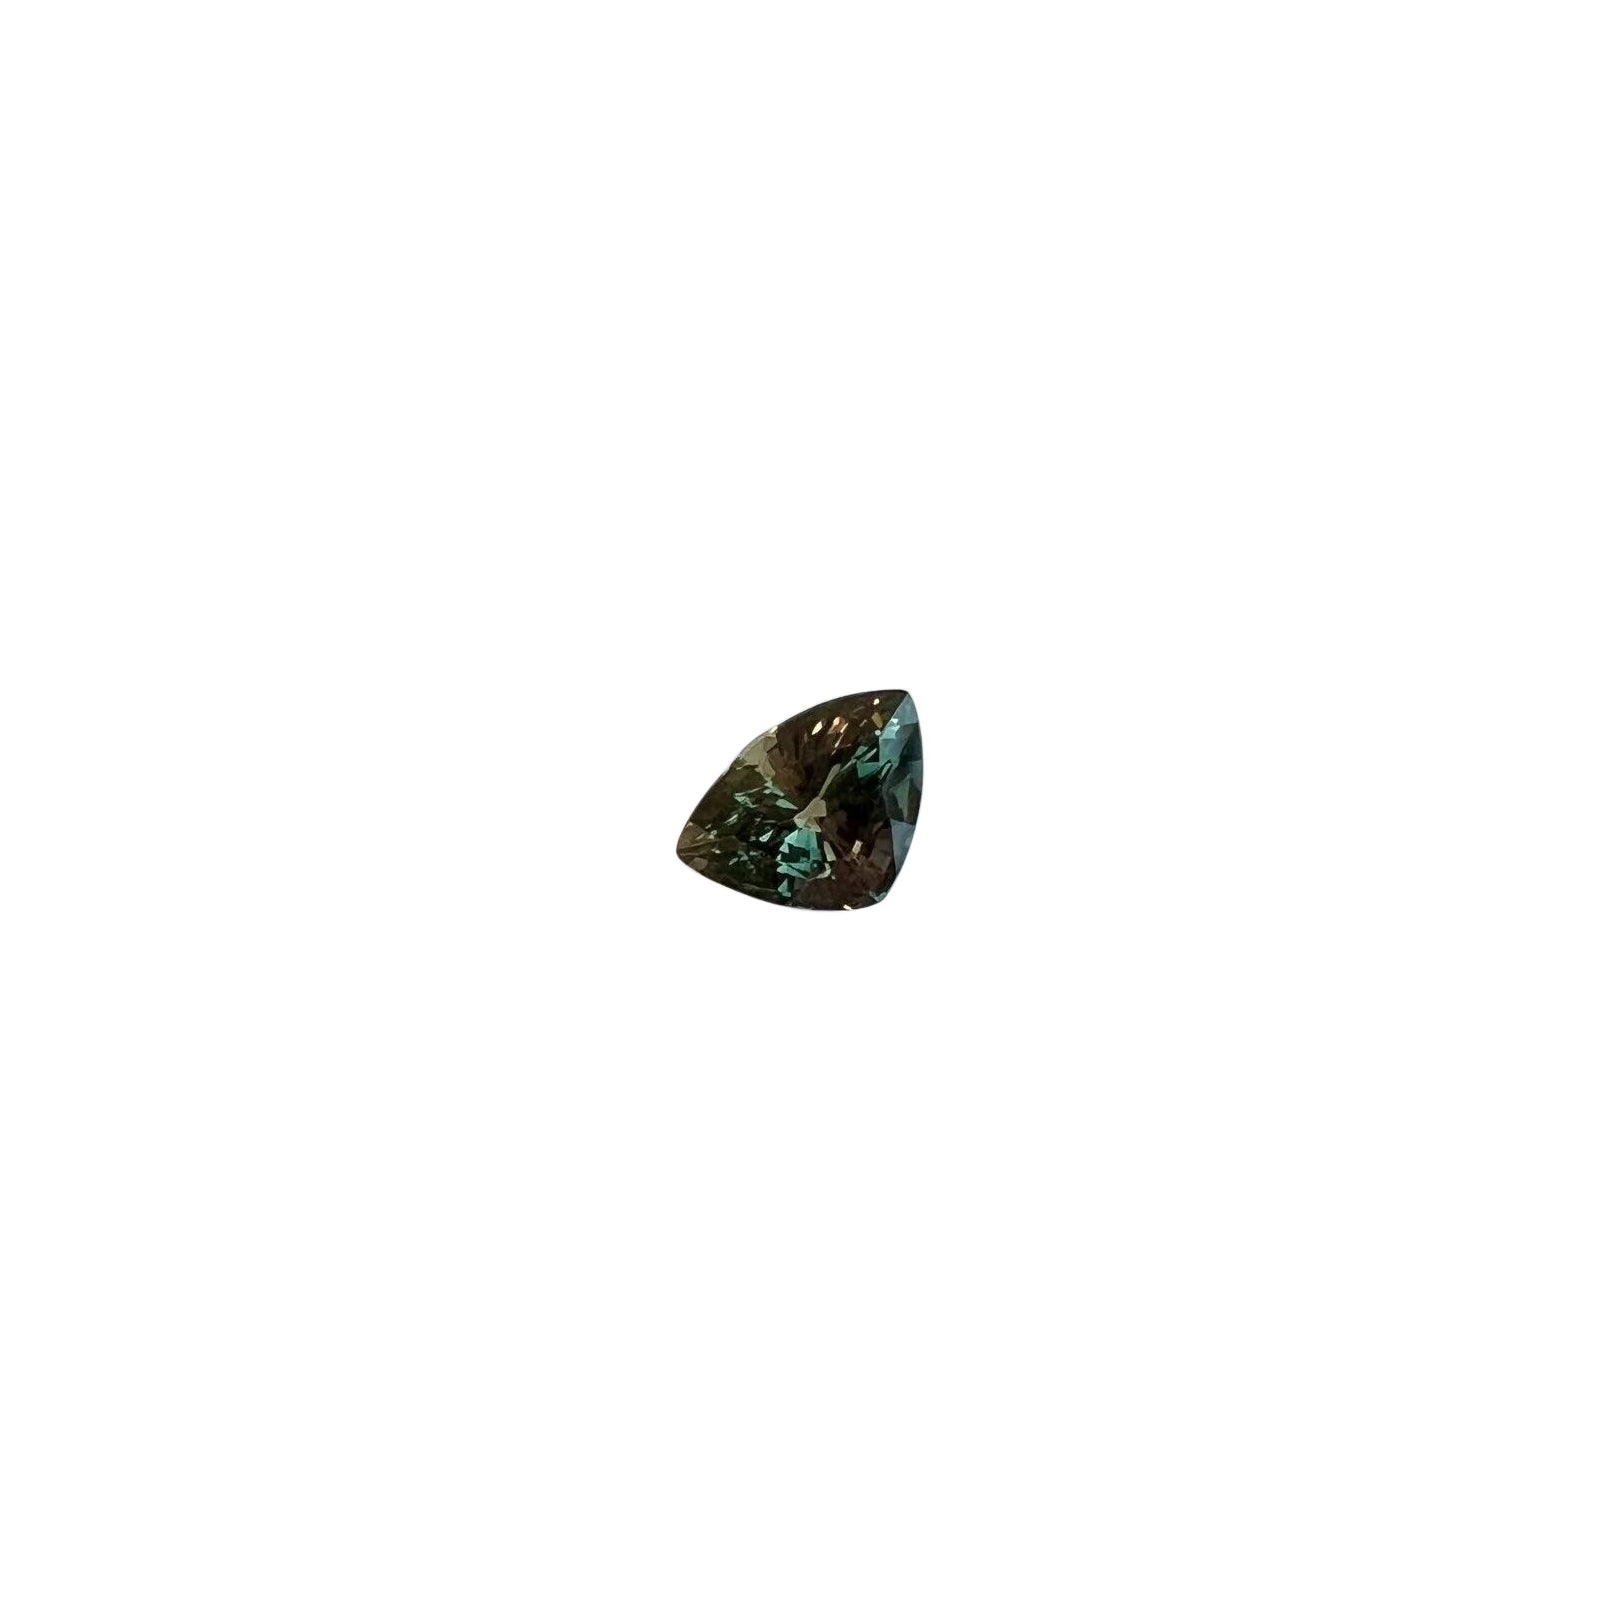 Saphir 1,01 carat couleur changeante rose vert bleu non chauffé taille triangulaire certifiée IGI